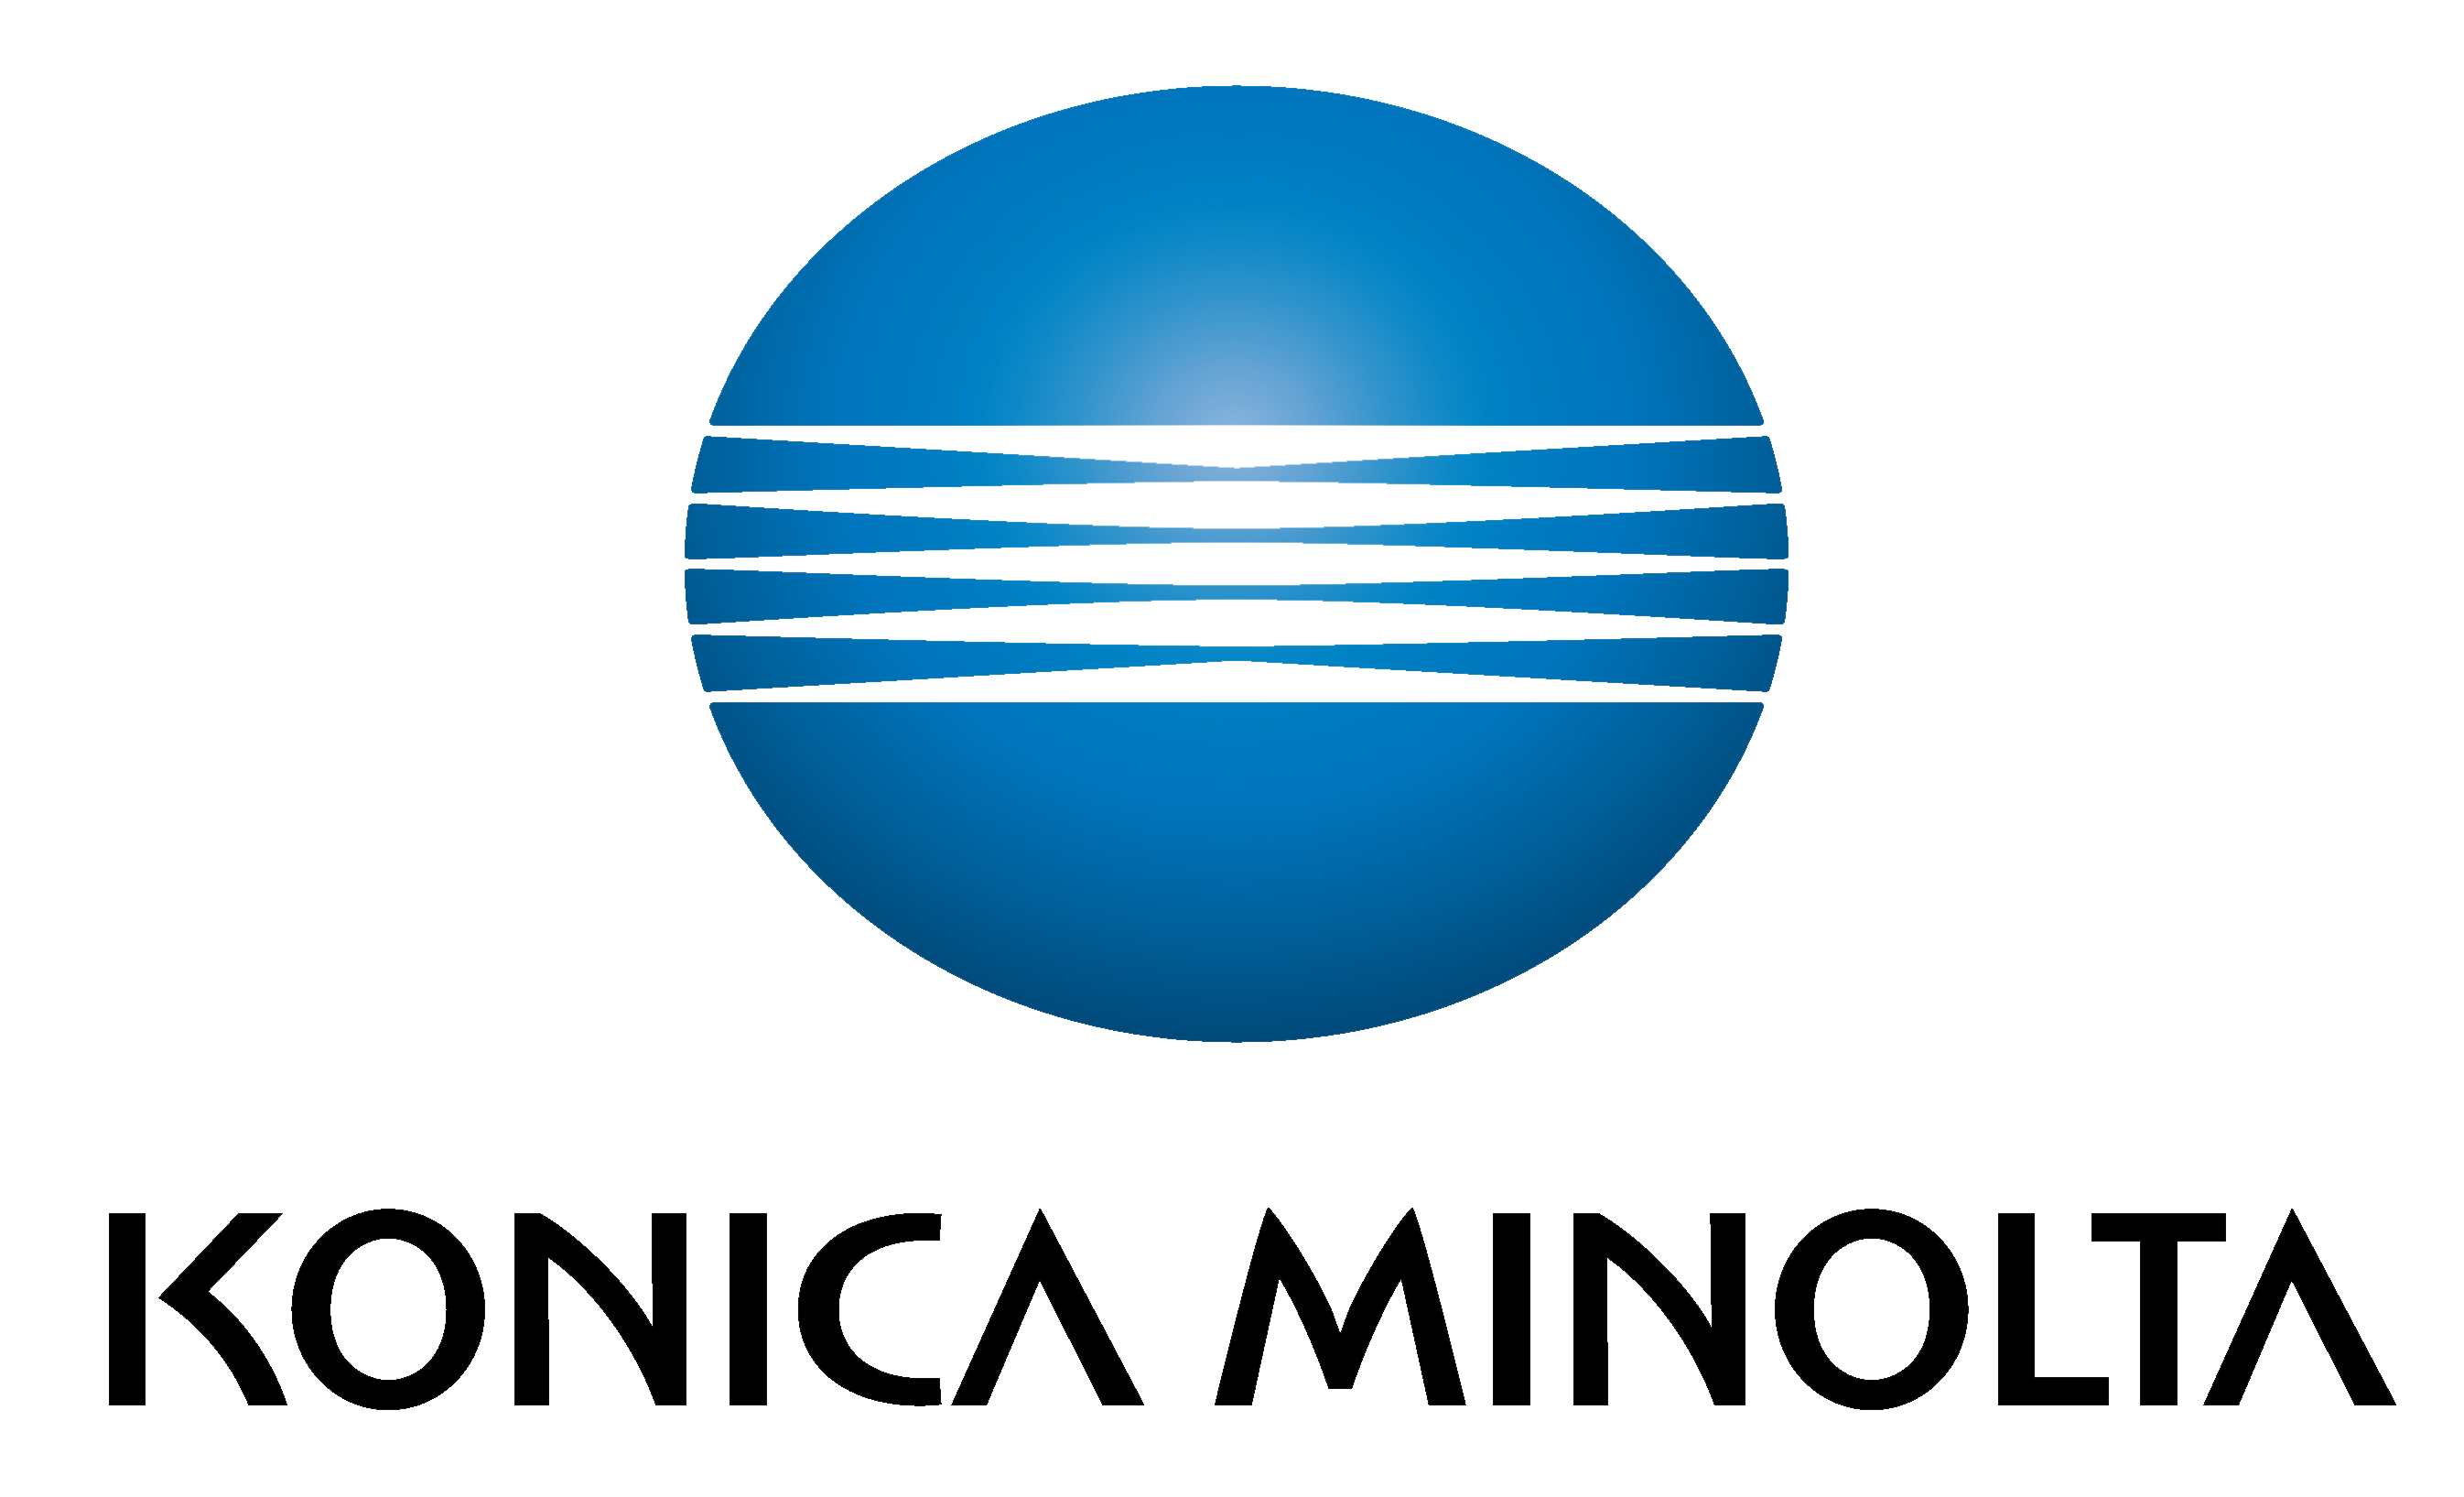 Konica Minolta 3D Logo Vertikal L Kopie